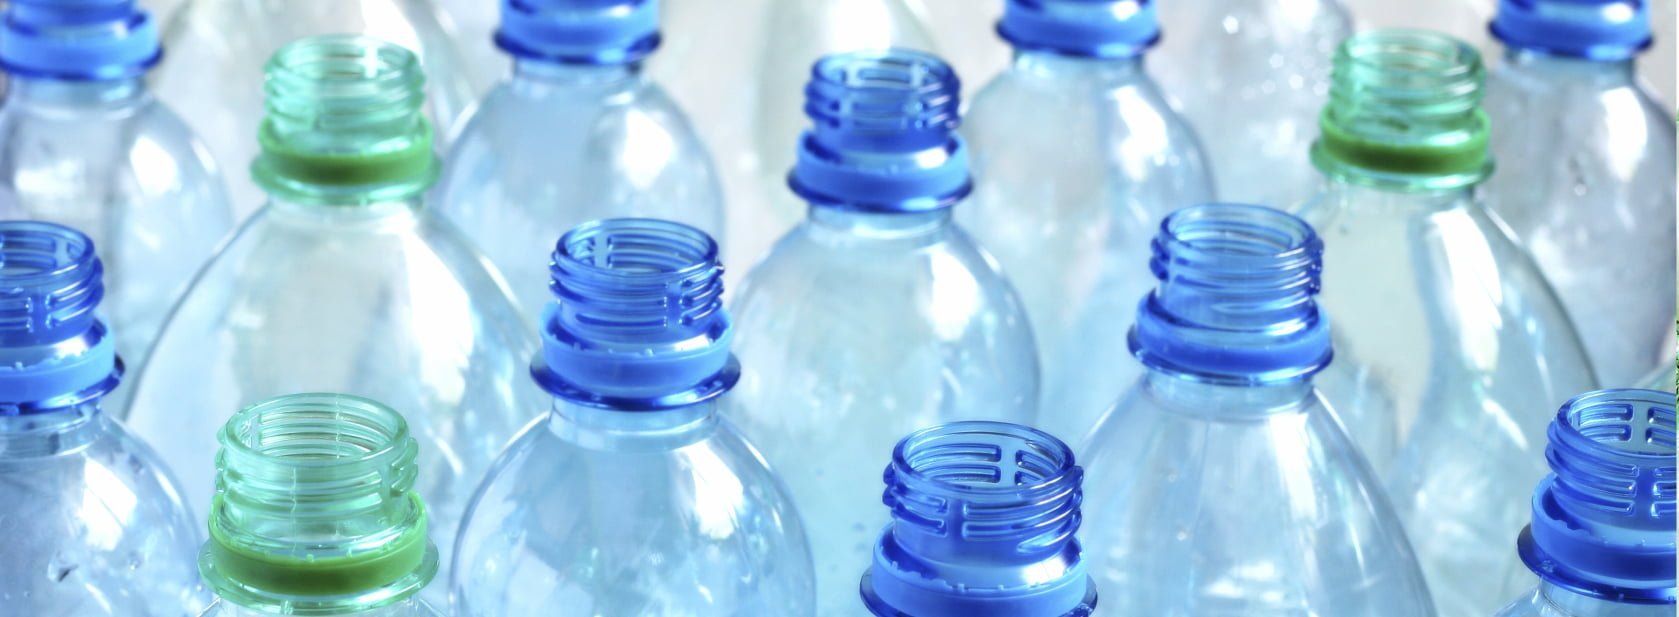 Blue And Green Plastic Bottles E1418657835949 مجلة نقطة العلمية